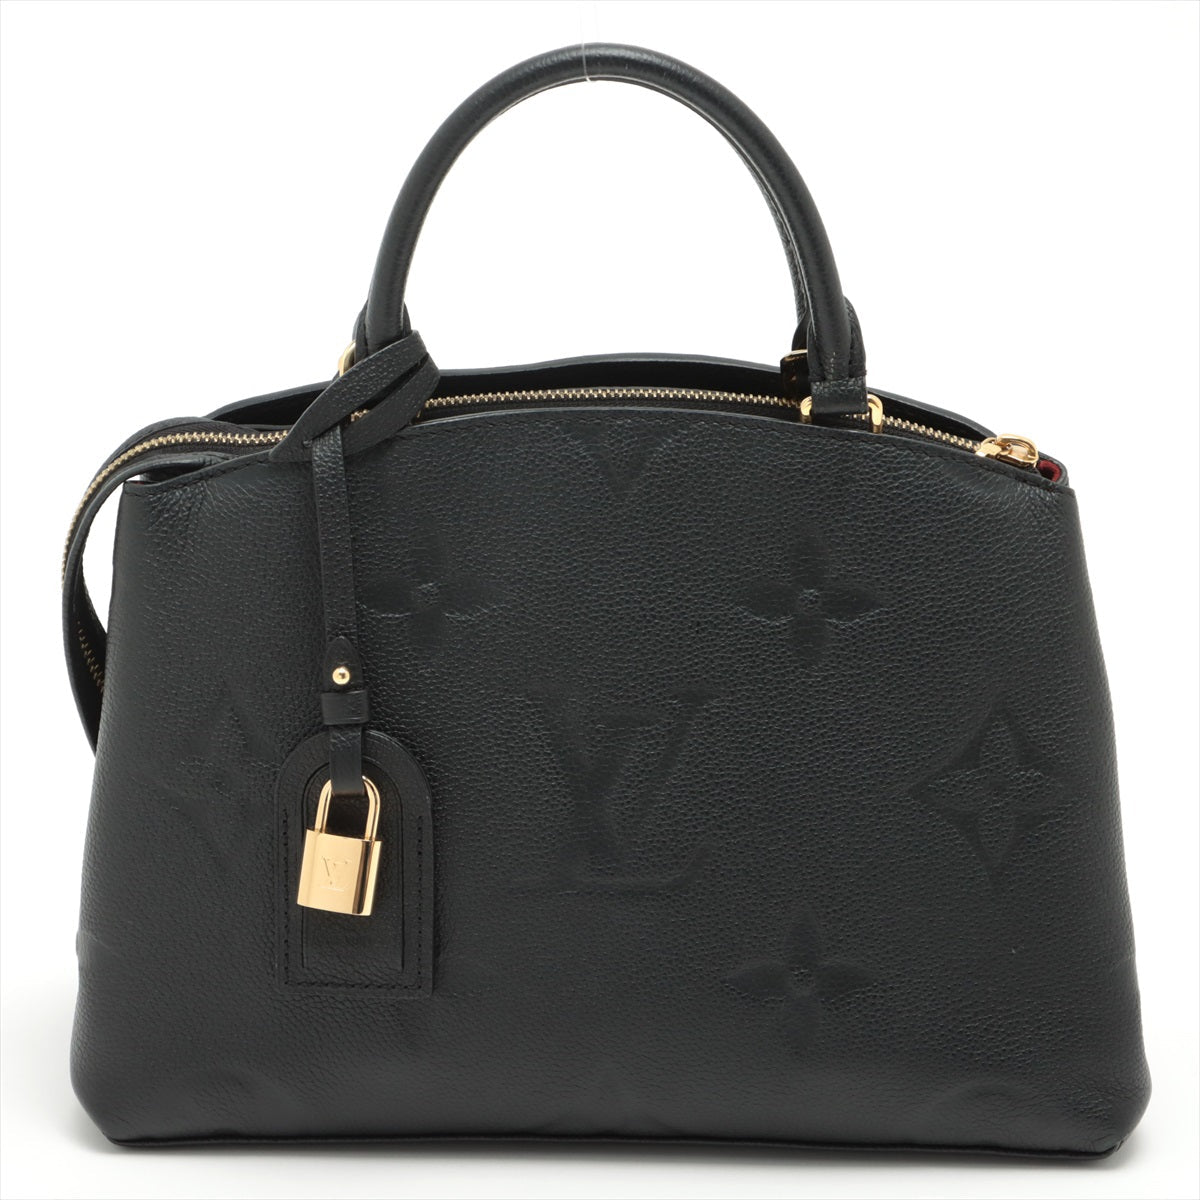 Louis Vuitton Bags - buy Pre-owned at Tabita Bags – Tabita Bags with Love